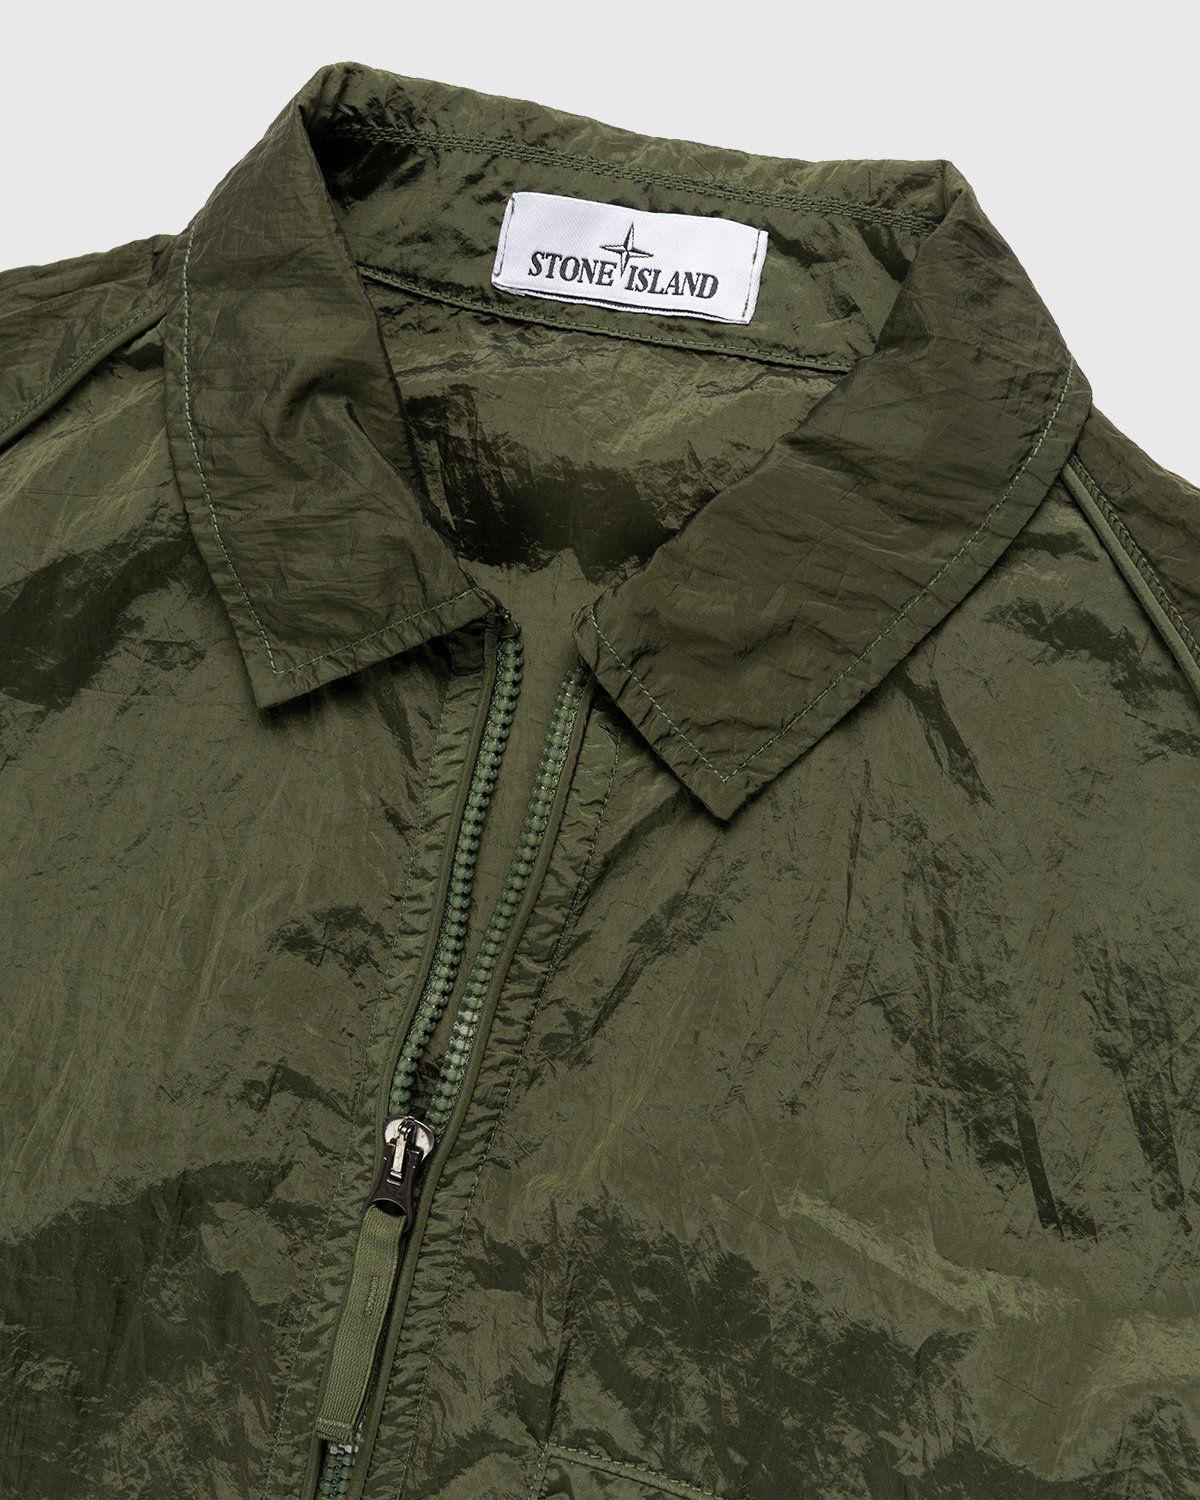 Stone Island - 12321 Garment-Dyed Nylon Metal Overshirt Olive - Clothing - Green - Image 4